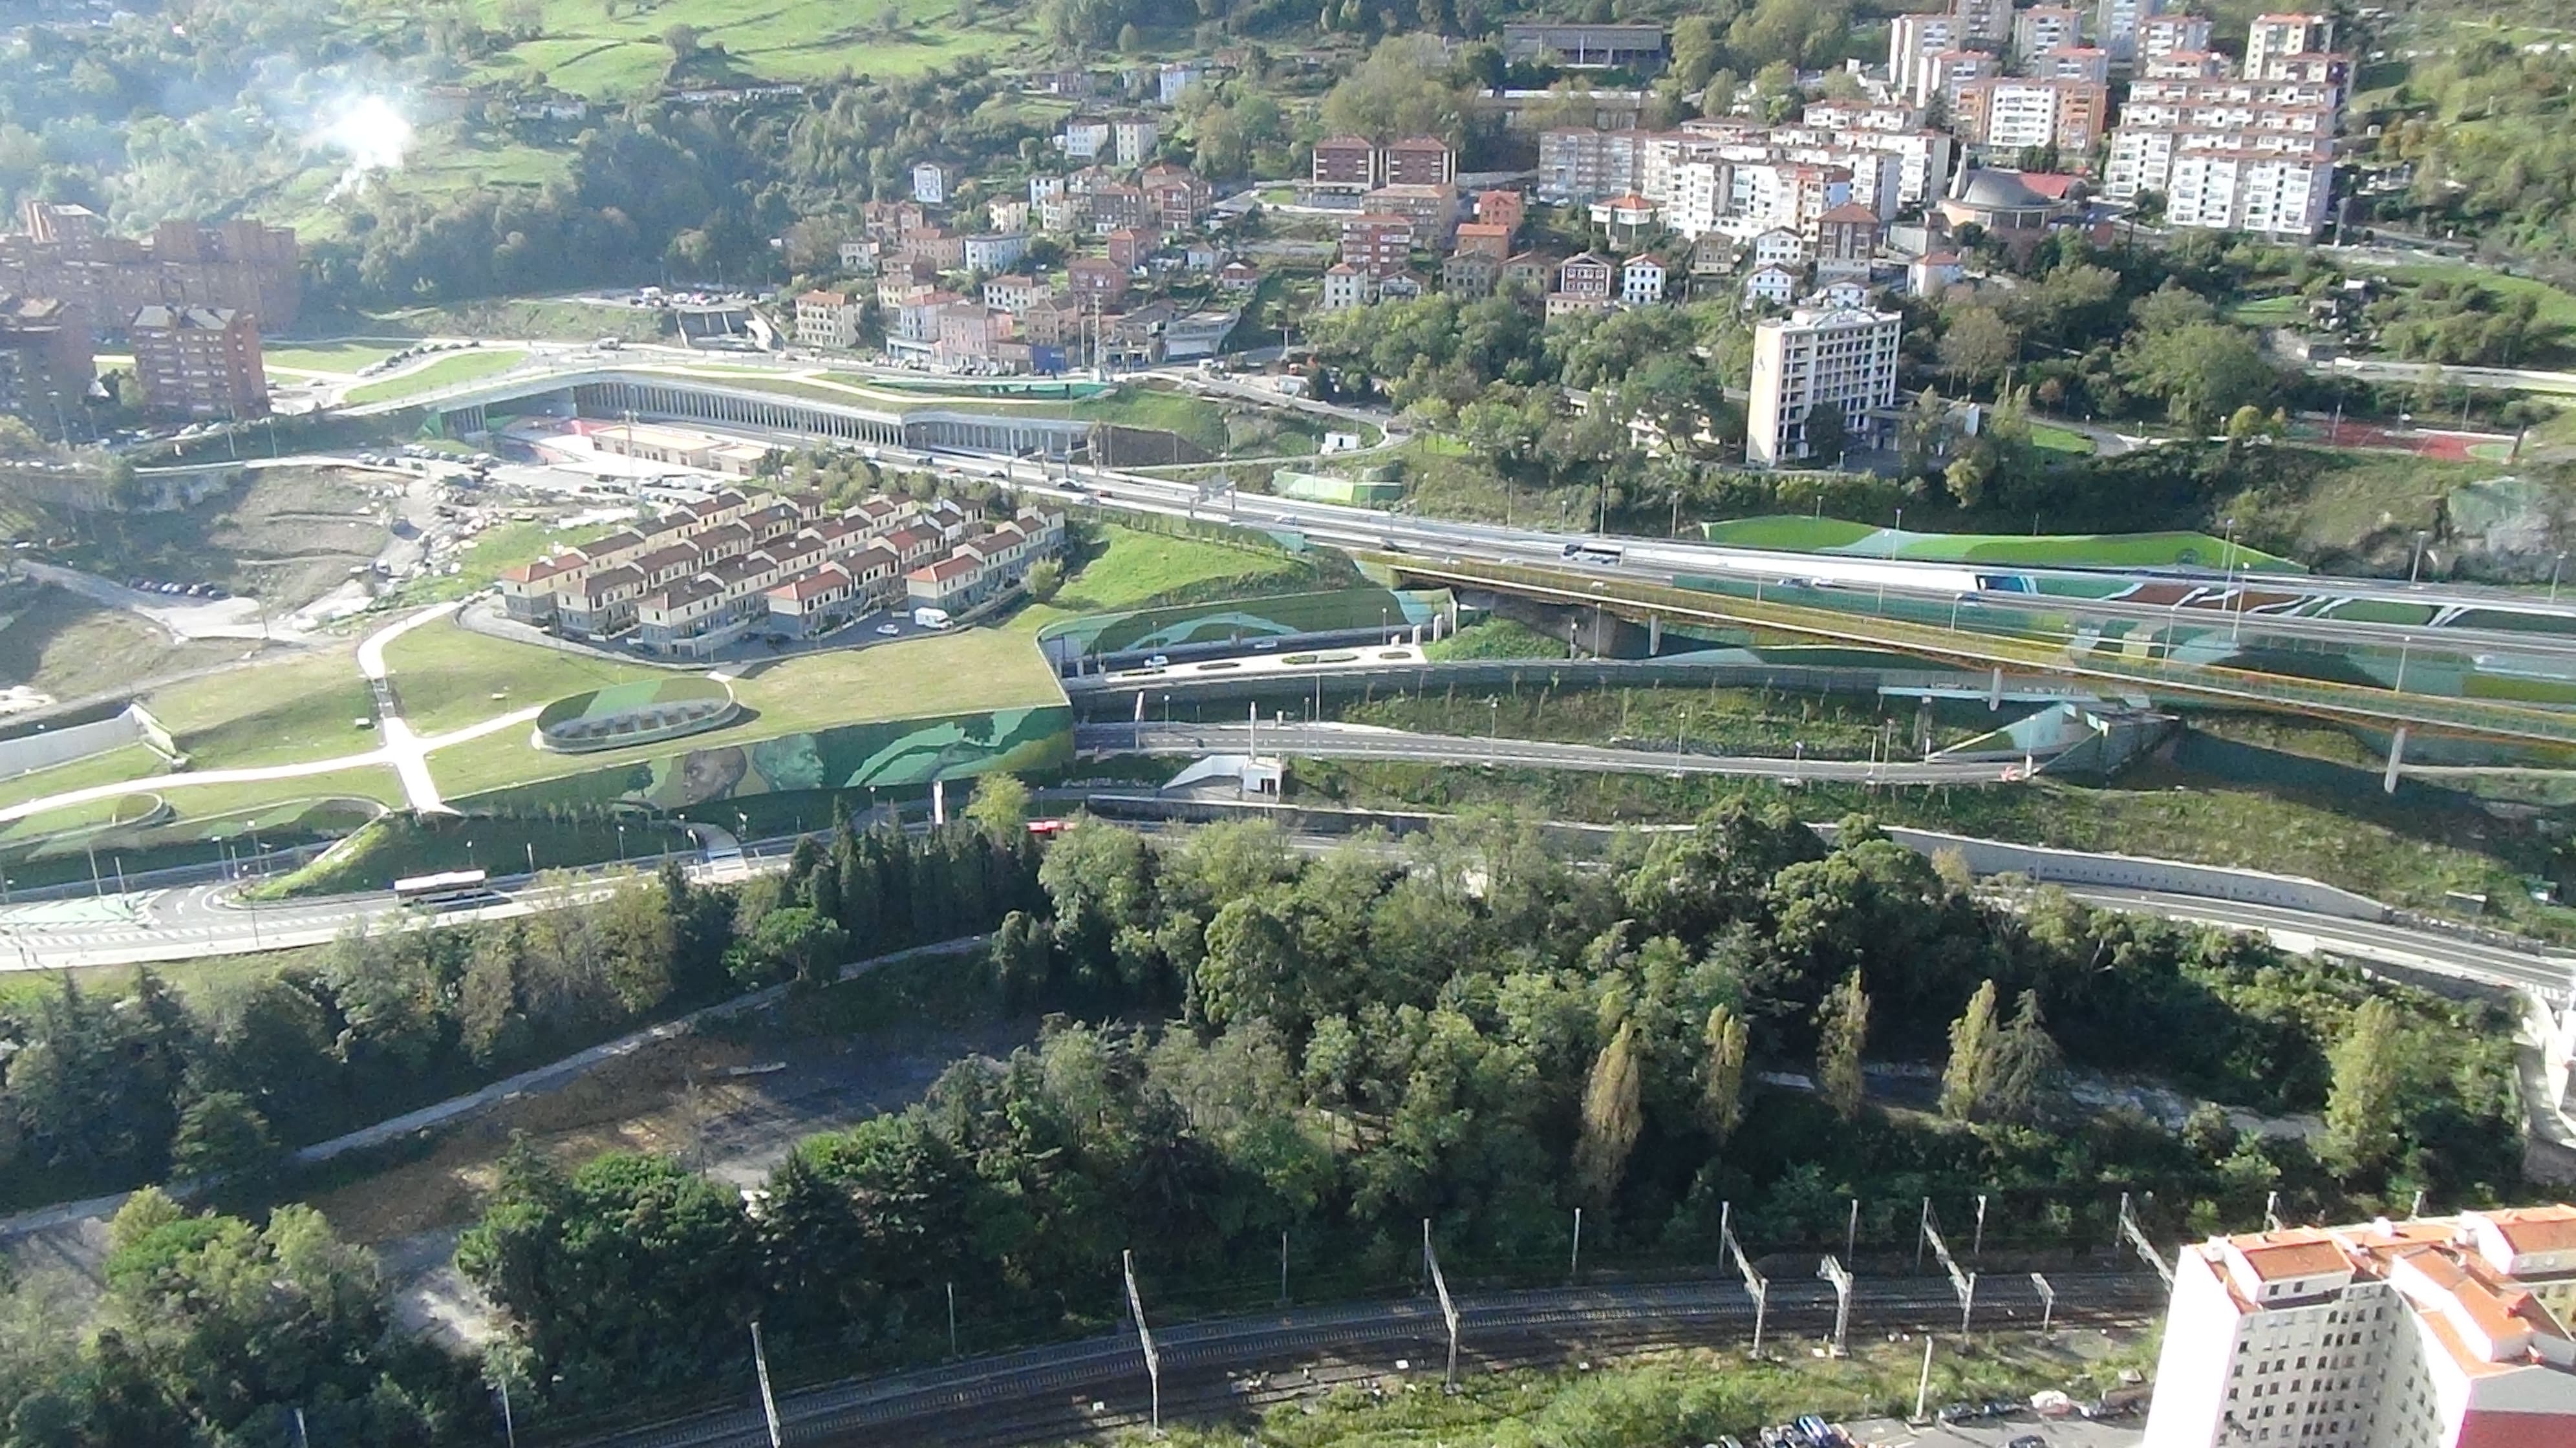 Image 3 of Access to Bilbao via San Mamés